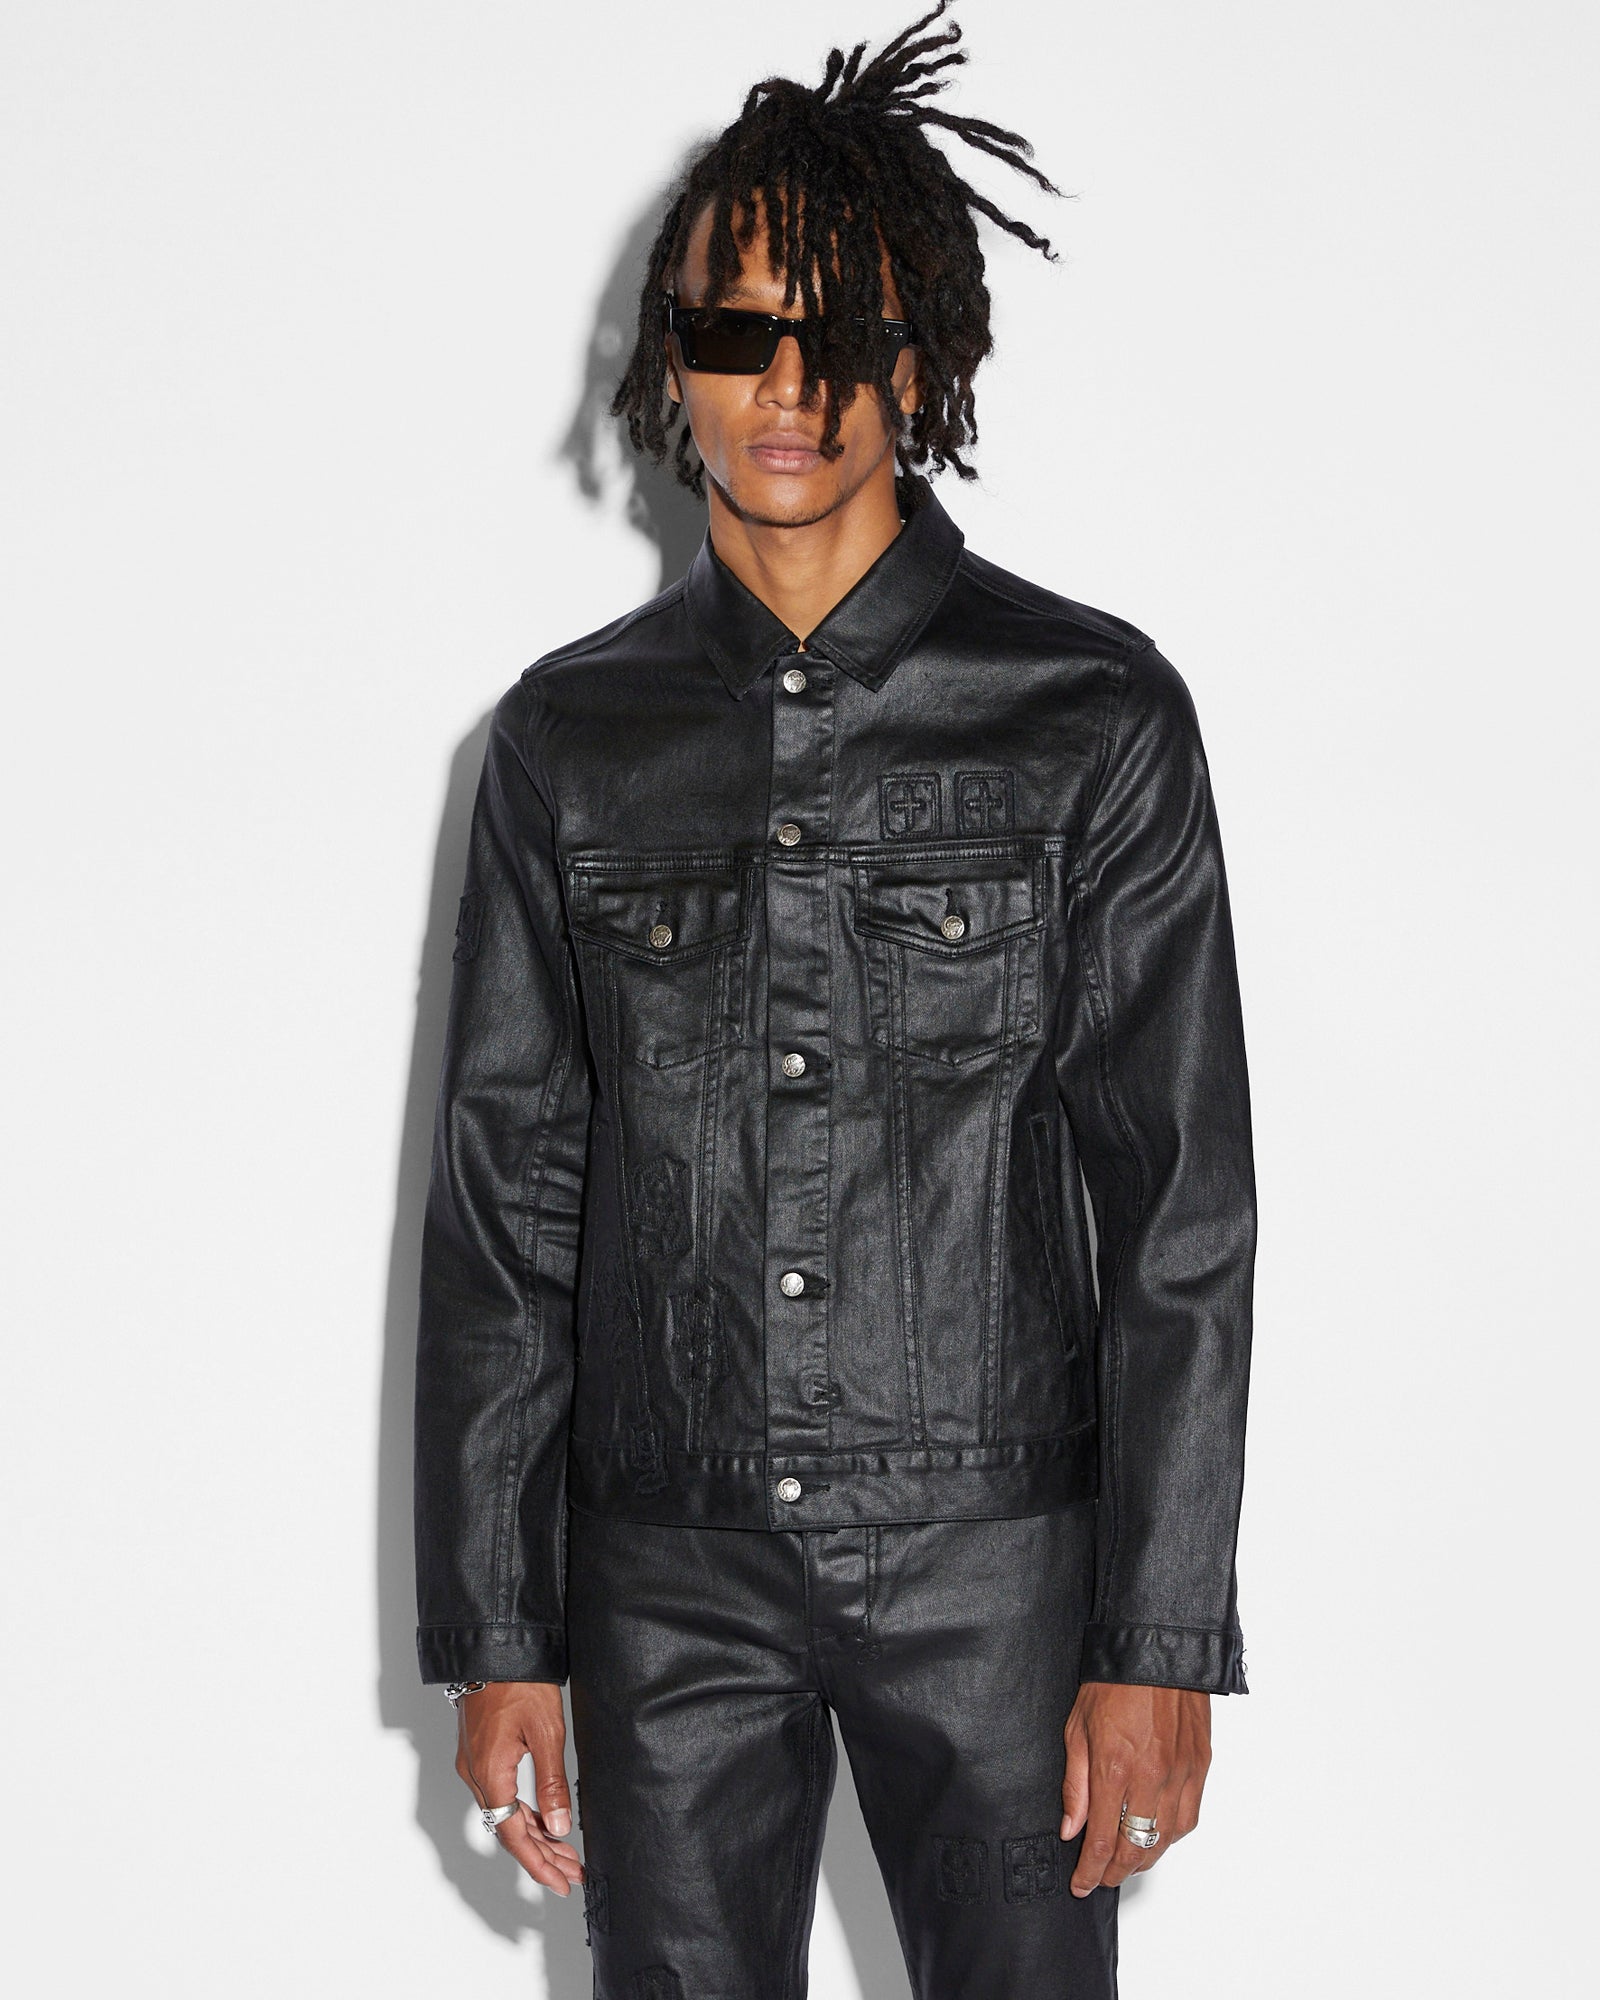 Men's Jackets - Denim, Leather & More | Ksubi ++